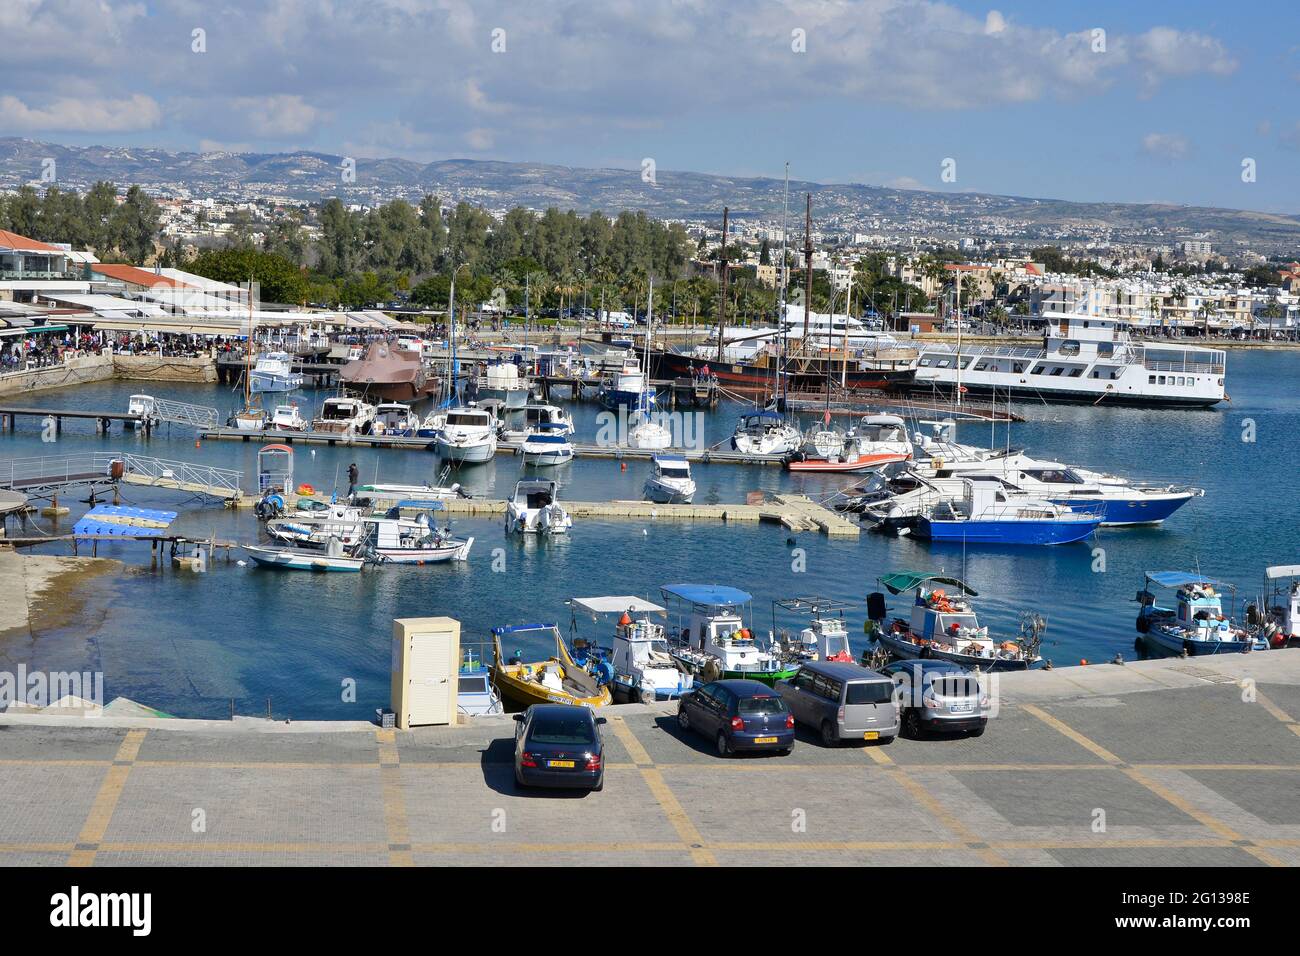 PAPHOS, SUR DE CHIPRE, 2016 DE JULIO El puerto en un ajetreado día de verano con mucha gente y barcos y mucha actividad de vacaciones. Foto de stock